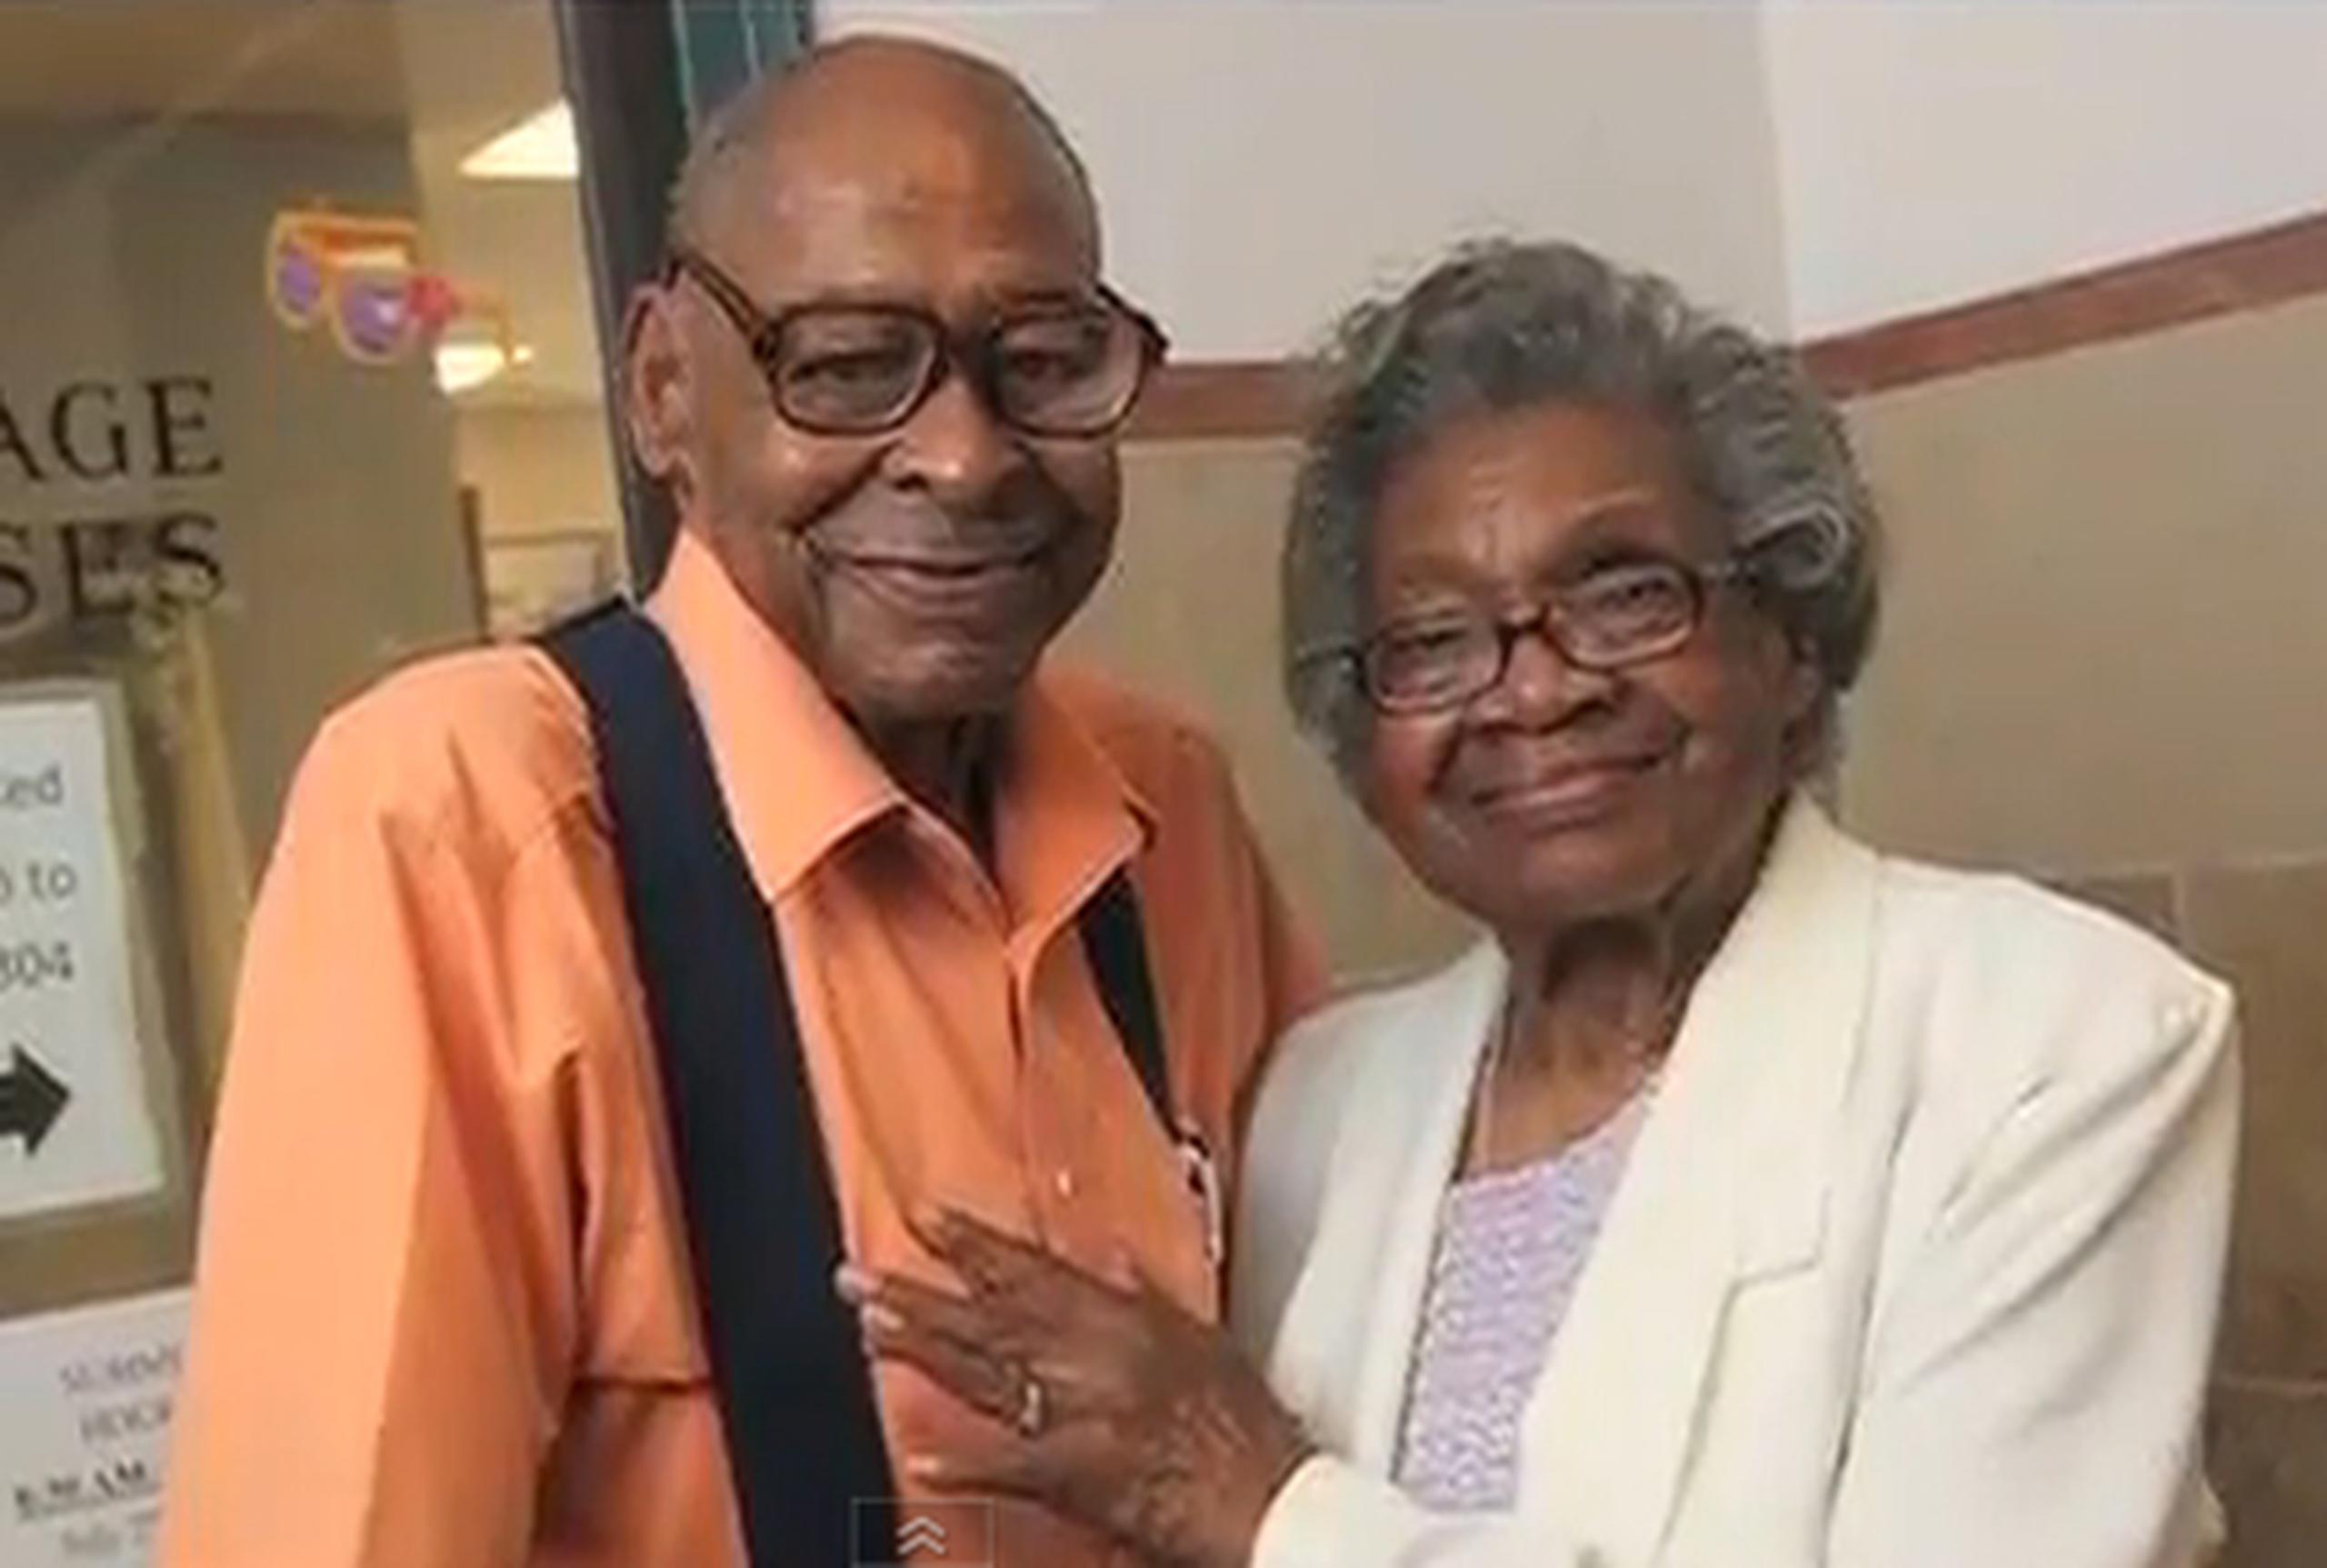 Lena Henderson y Davis Roland, ambos de 85 años, se conocieron cuando eran adolescentes en Chattanooga, Tennessee. (YouTube)